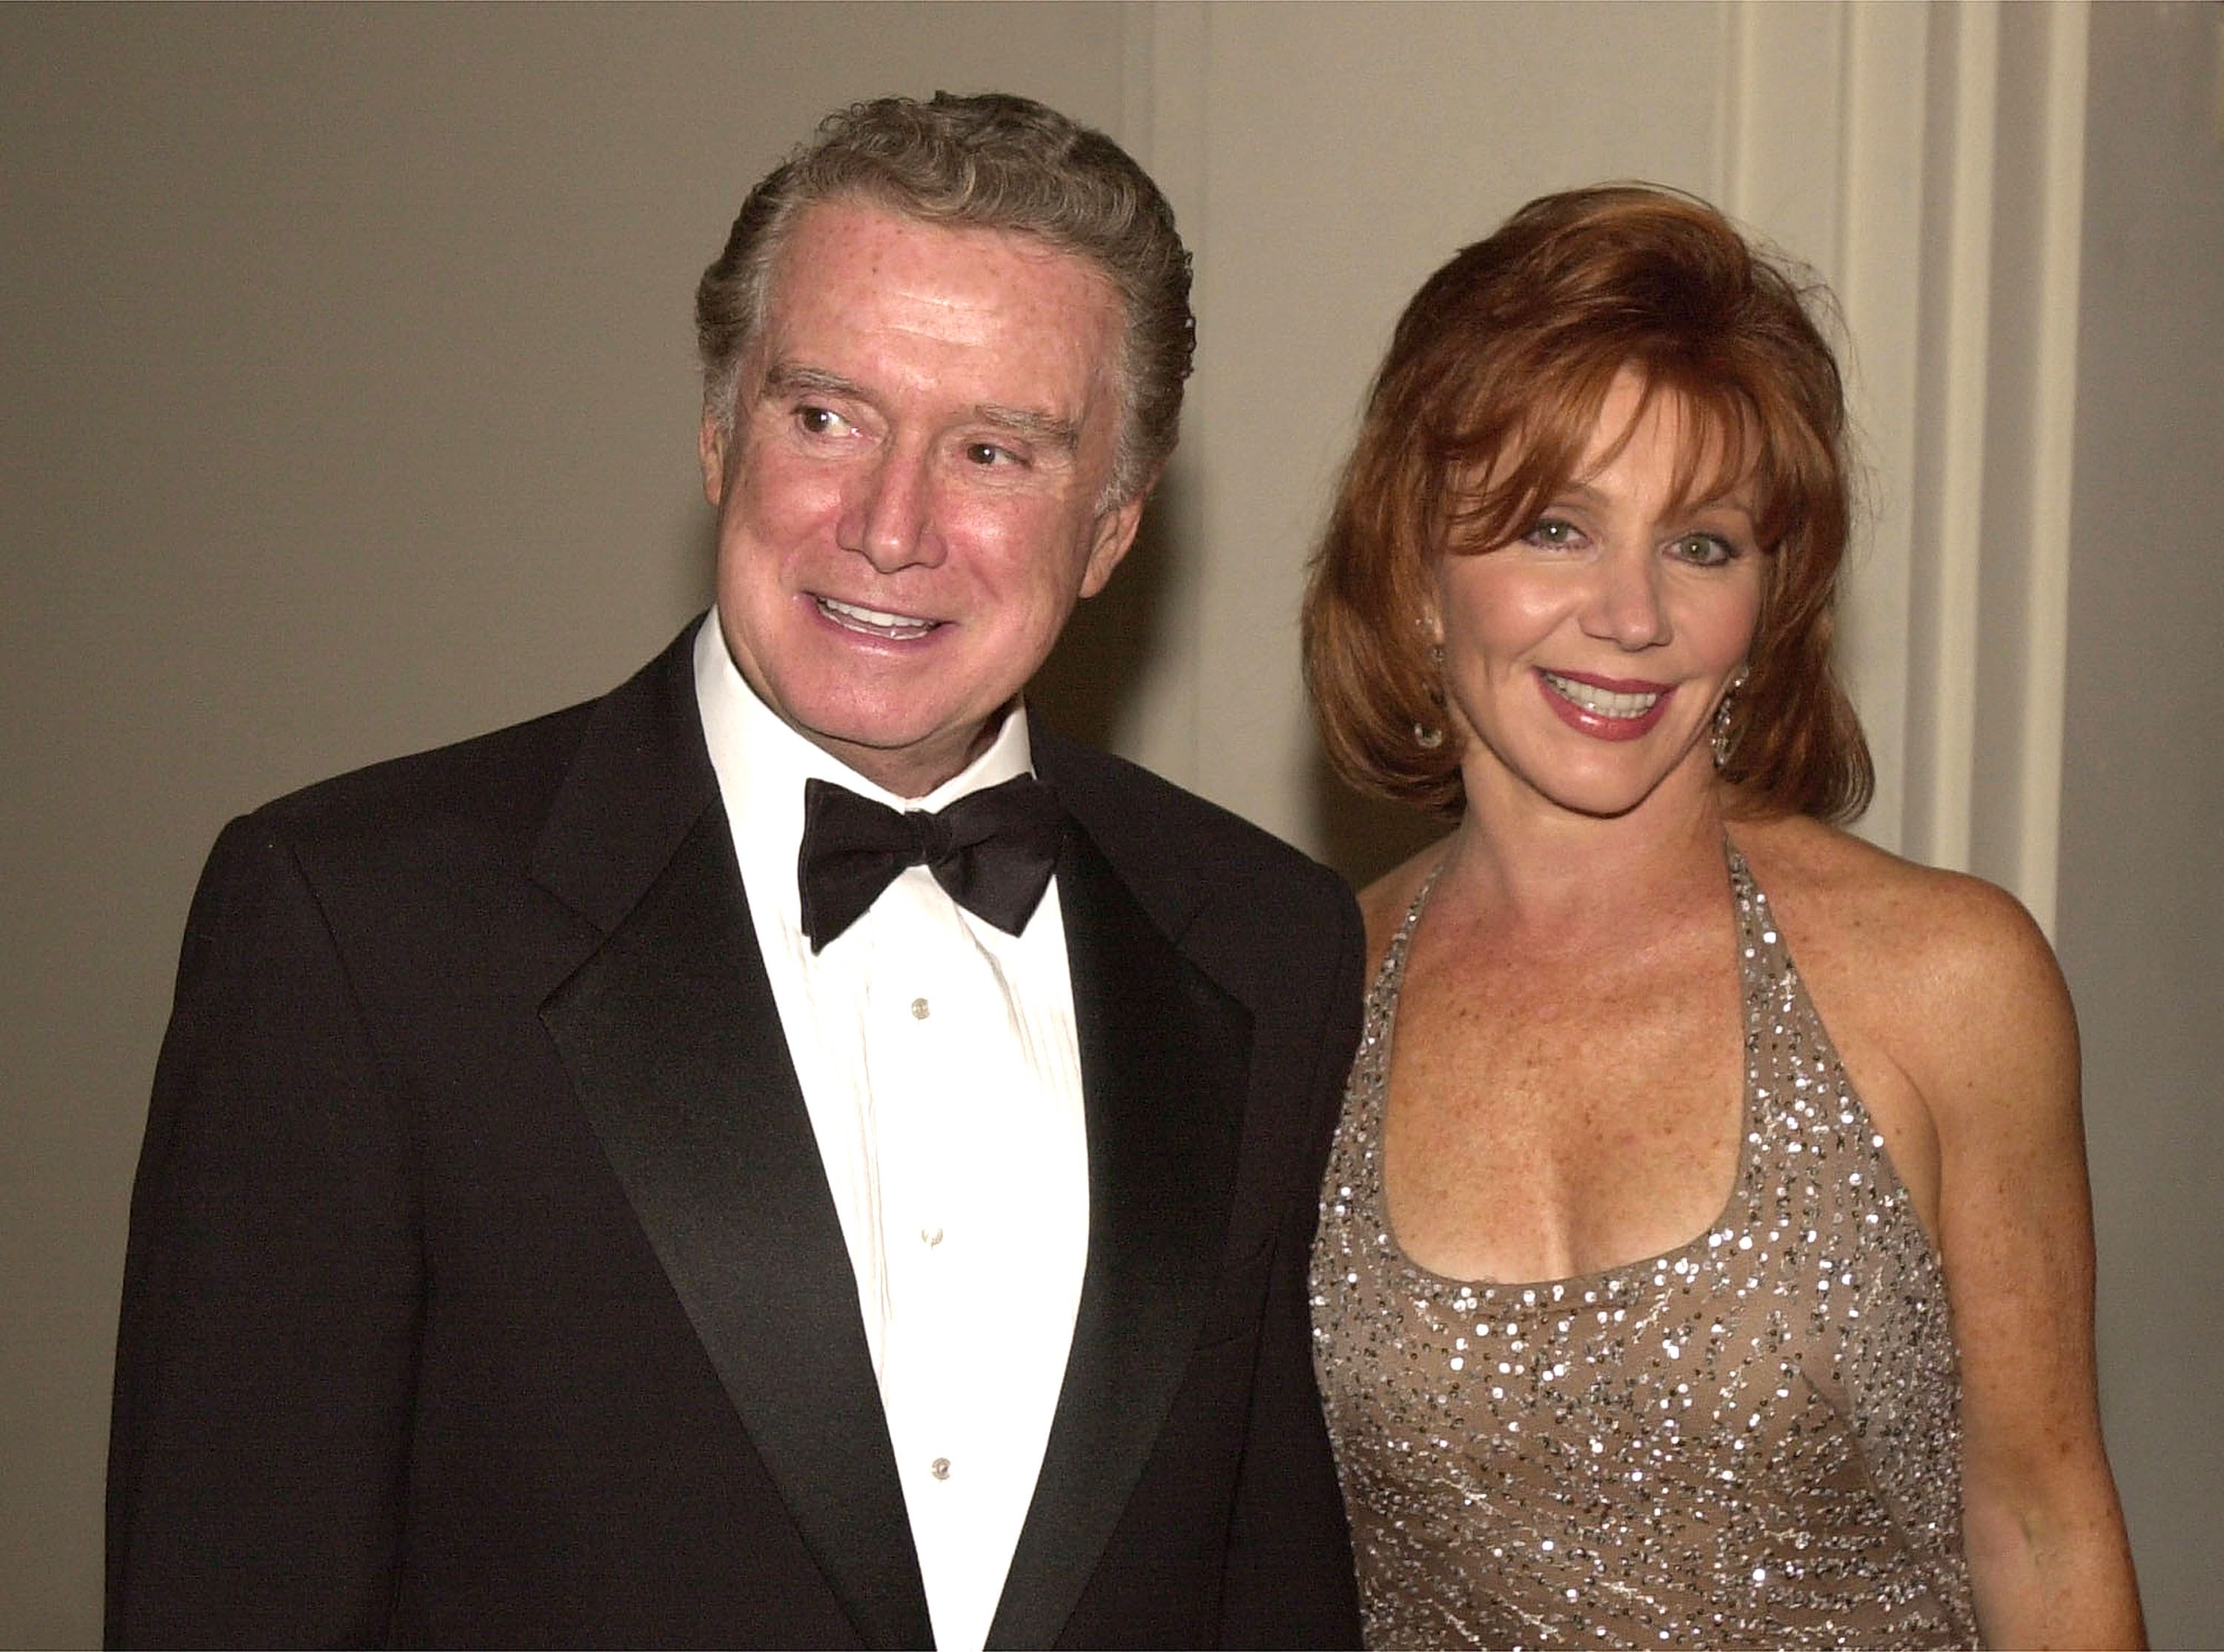 Regis Philbin's wife Joy was often mistaken for Kathie Lee Gifford